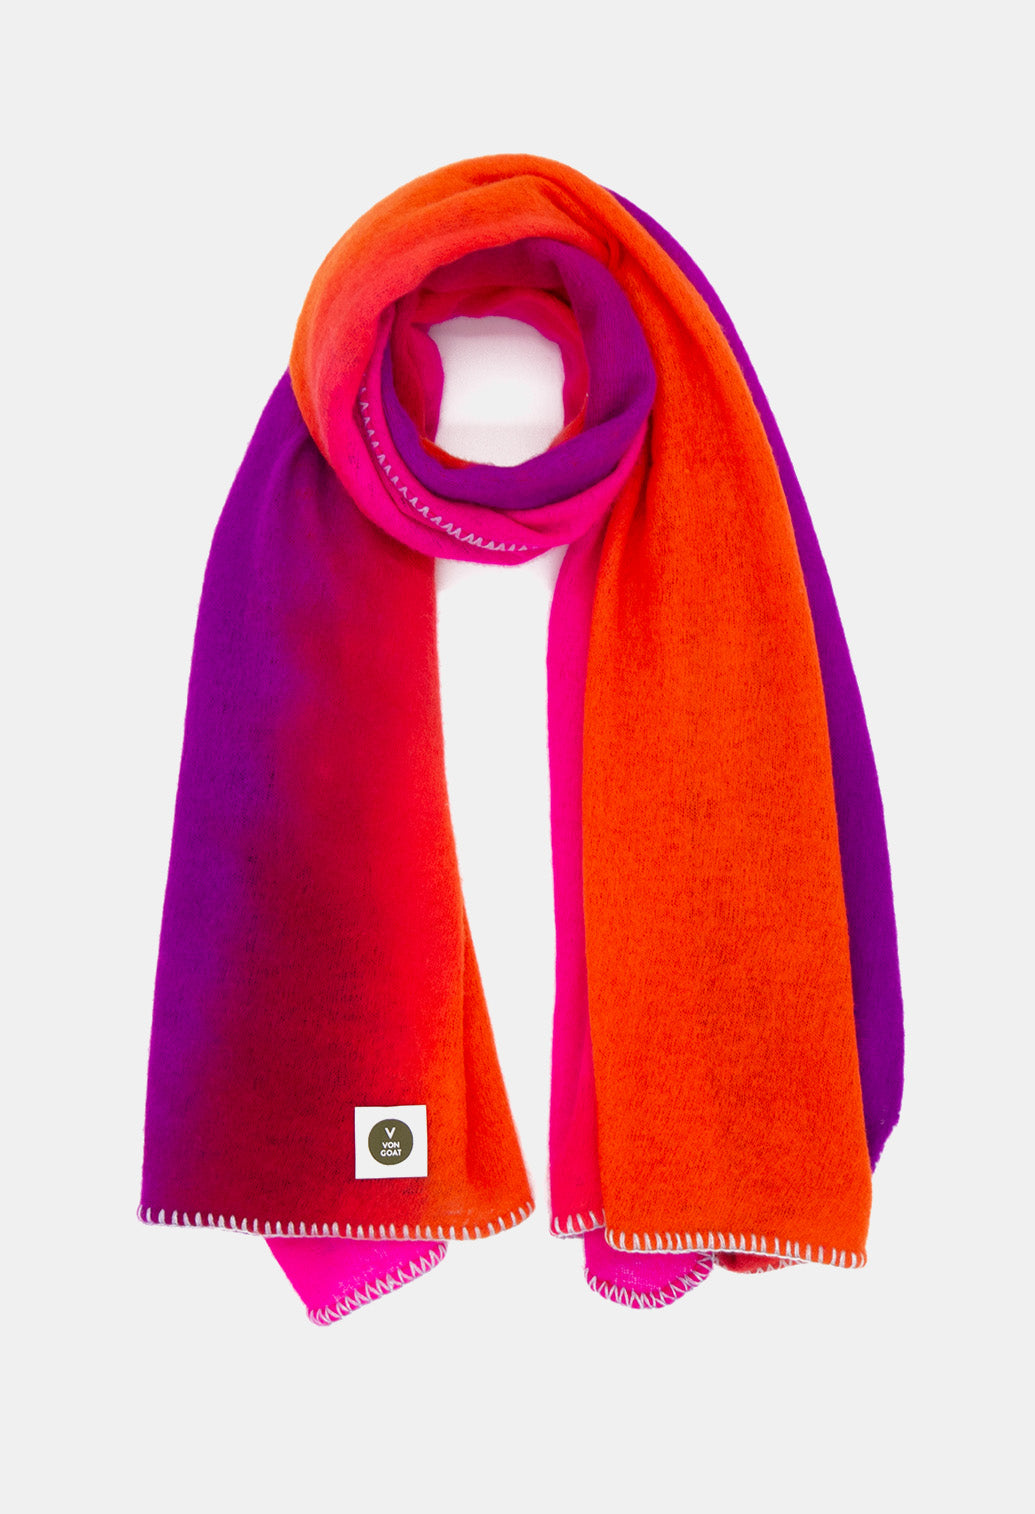 V Von Goat Kaschmir-Schal mit Fransen im Tiedye-Stil in den Farben Neon Pink und Neon Lila und Orange aus reiner Cashmere-Wolle auf weißem Untergrund.